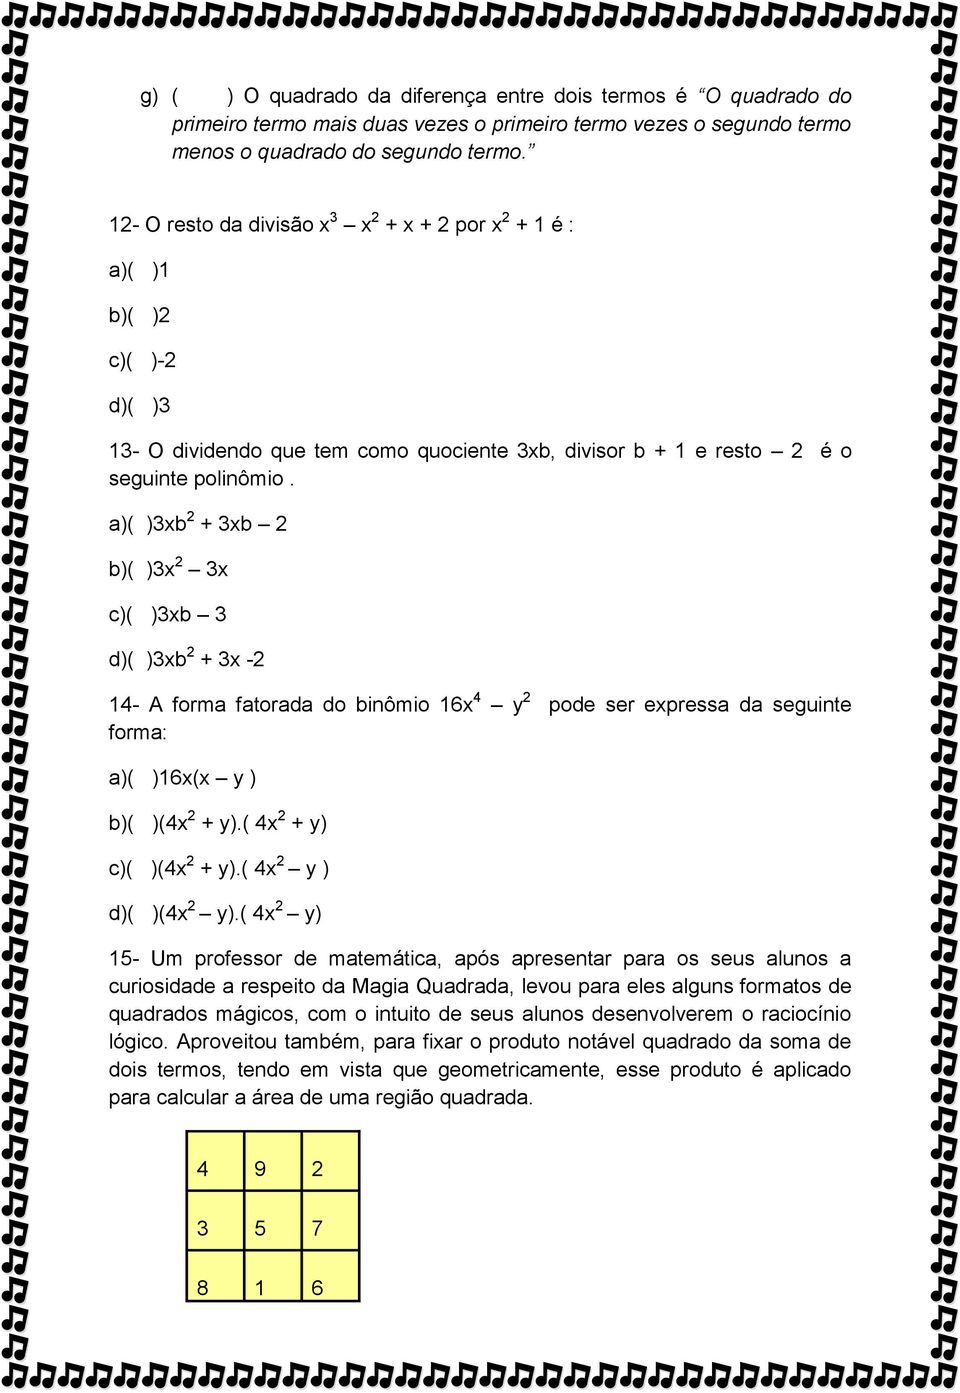 a)( )3xb 2 + 3xb 2 b)( )3x 2 3x c)( )3xb 3 d)( )3xb 2 + 3x -2 14- A forma fatorada do binômio 16x 4 y 2 pode ser expressa da seguinte forma: a)( )16x(x y ) b)( )(4x 2 + y).( 4x 2 + y) c)( )(4x 2 + y).